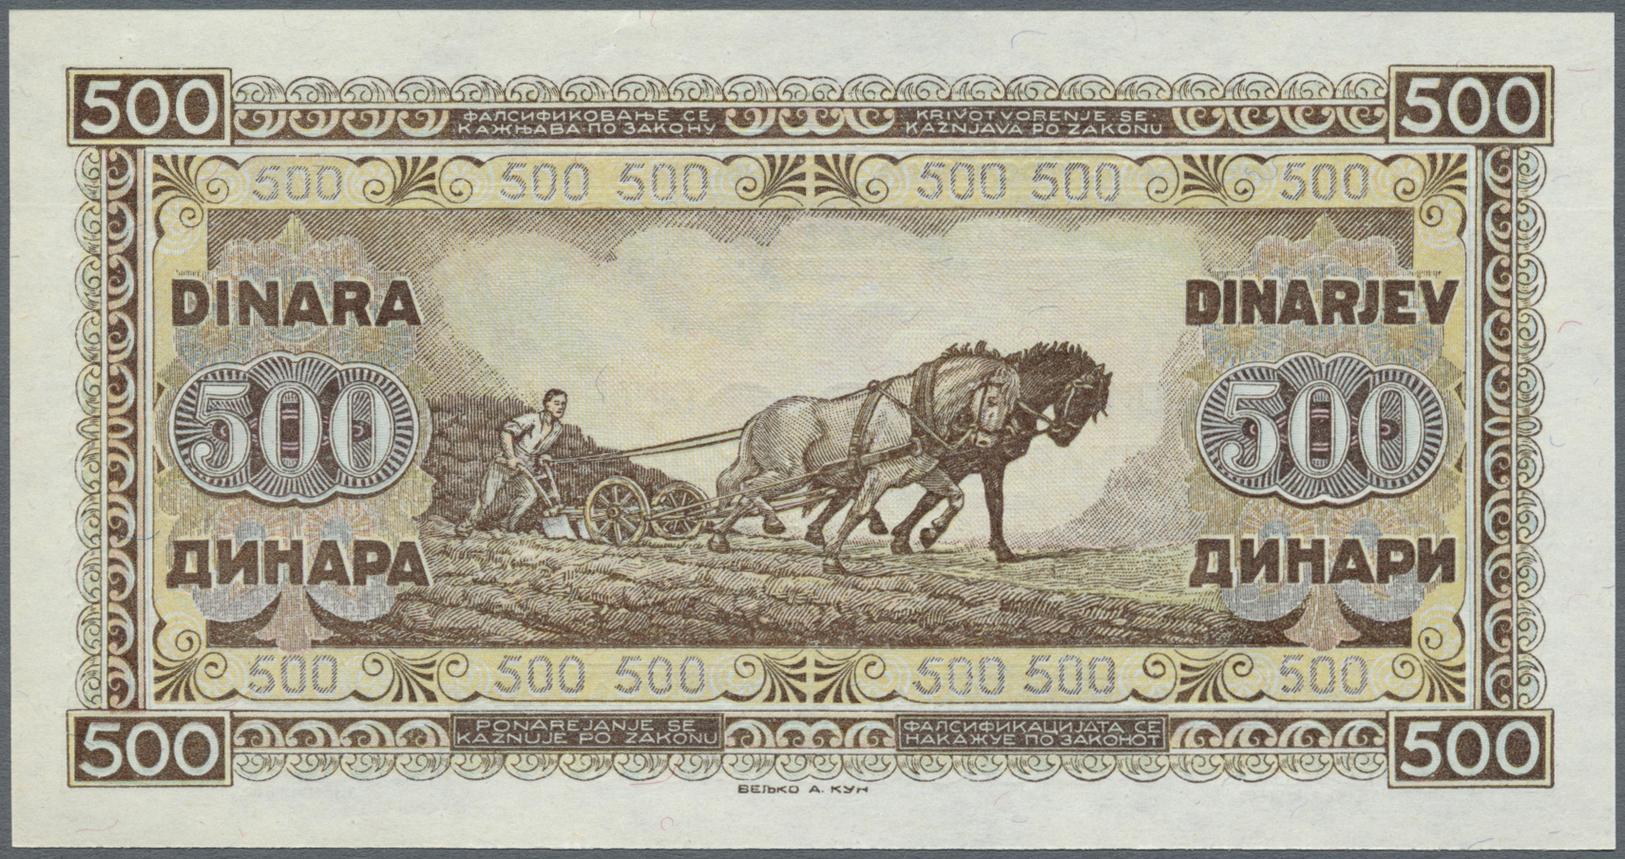 03514 Yugoslavia / Jugoslavien: 500 Dinars 1945 P. 66a In Condition: UNC. - Yougoslavie